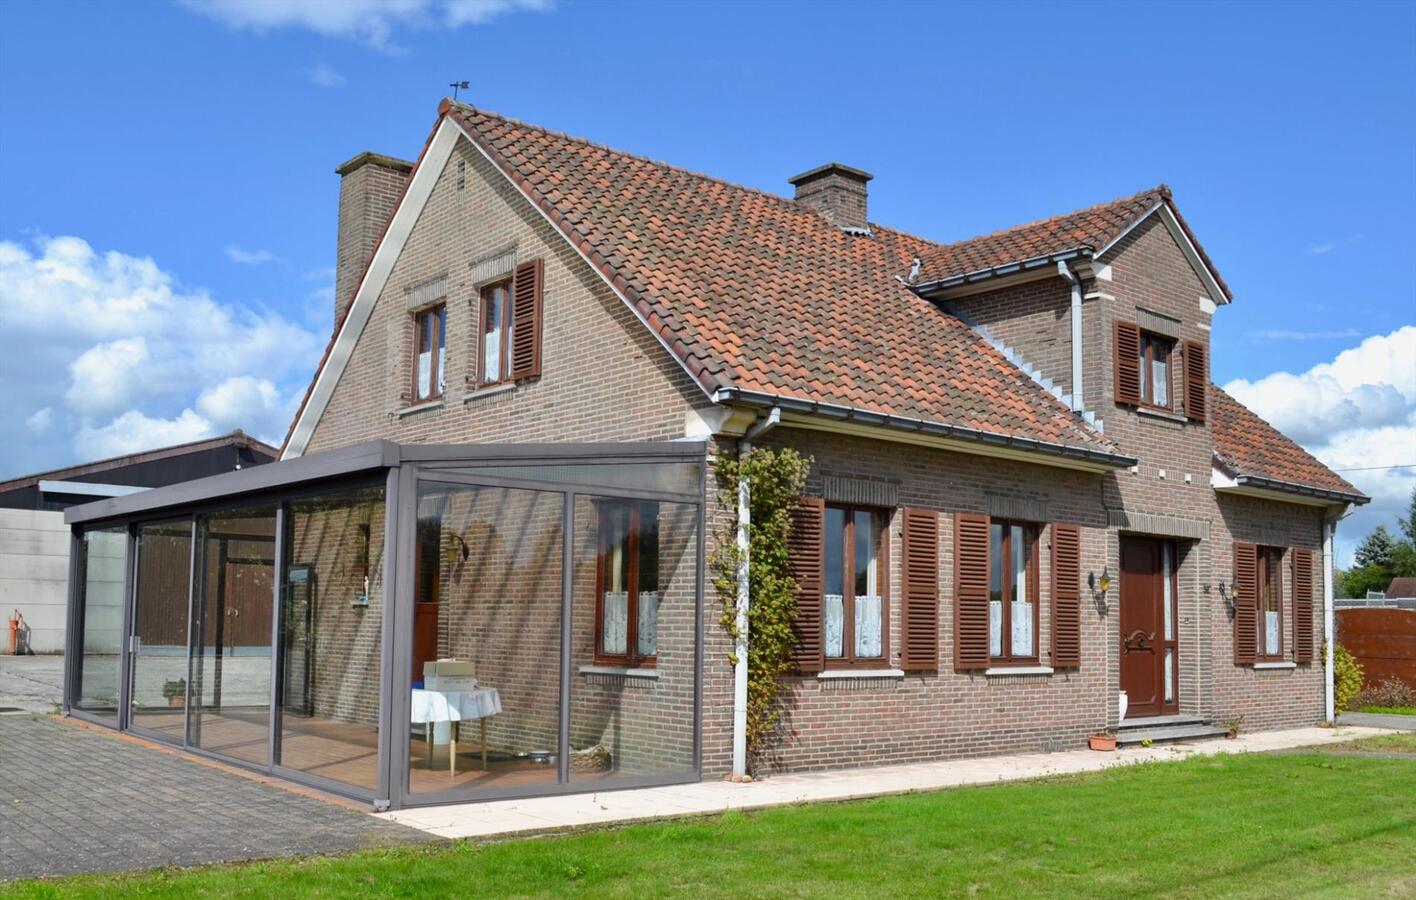 Property sold in Oudenaarde